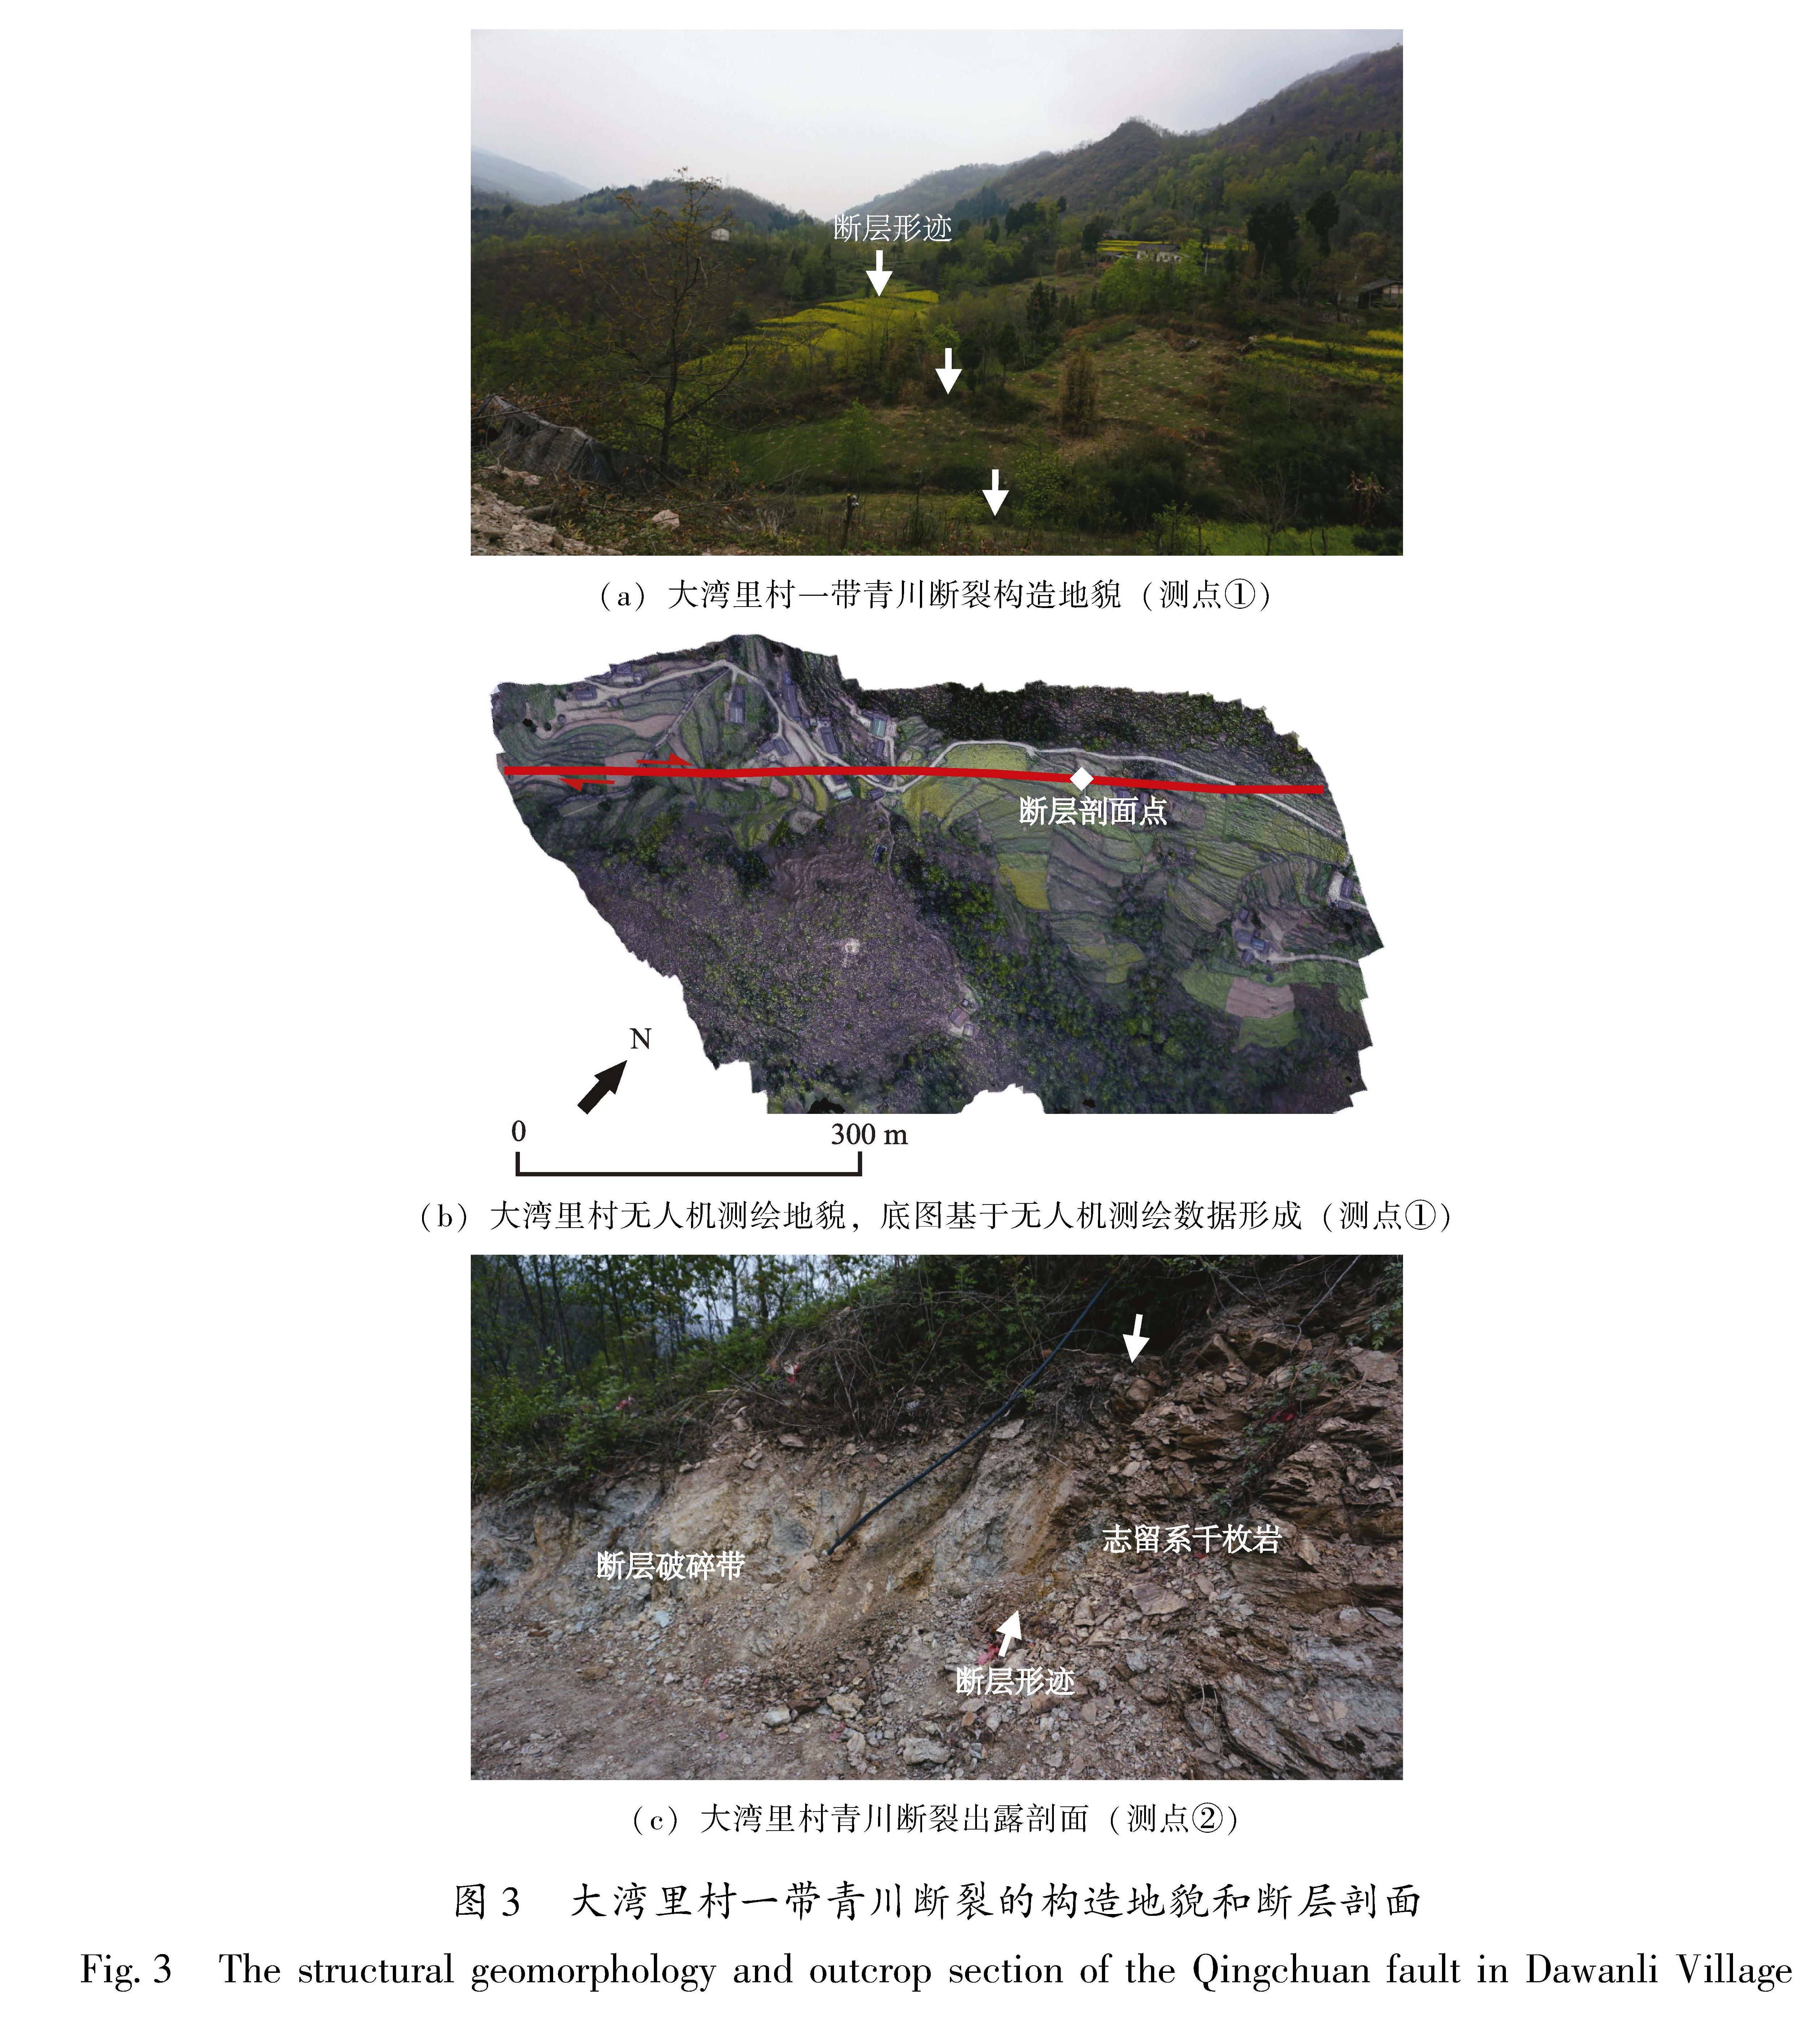 图3 大湾里村一带青川断裂的构造地貌和断层剖面<br/>Fig.3 The structural geomorphology and outcrop section of the Qingchuan fault in Dawanli Village